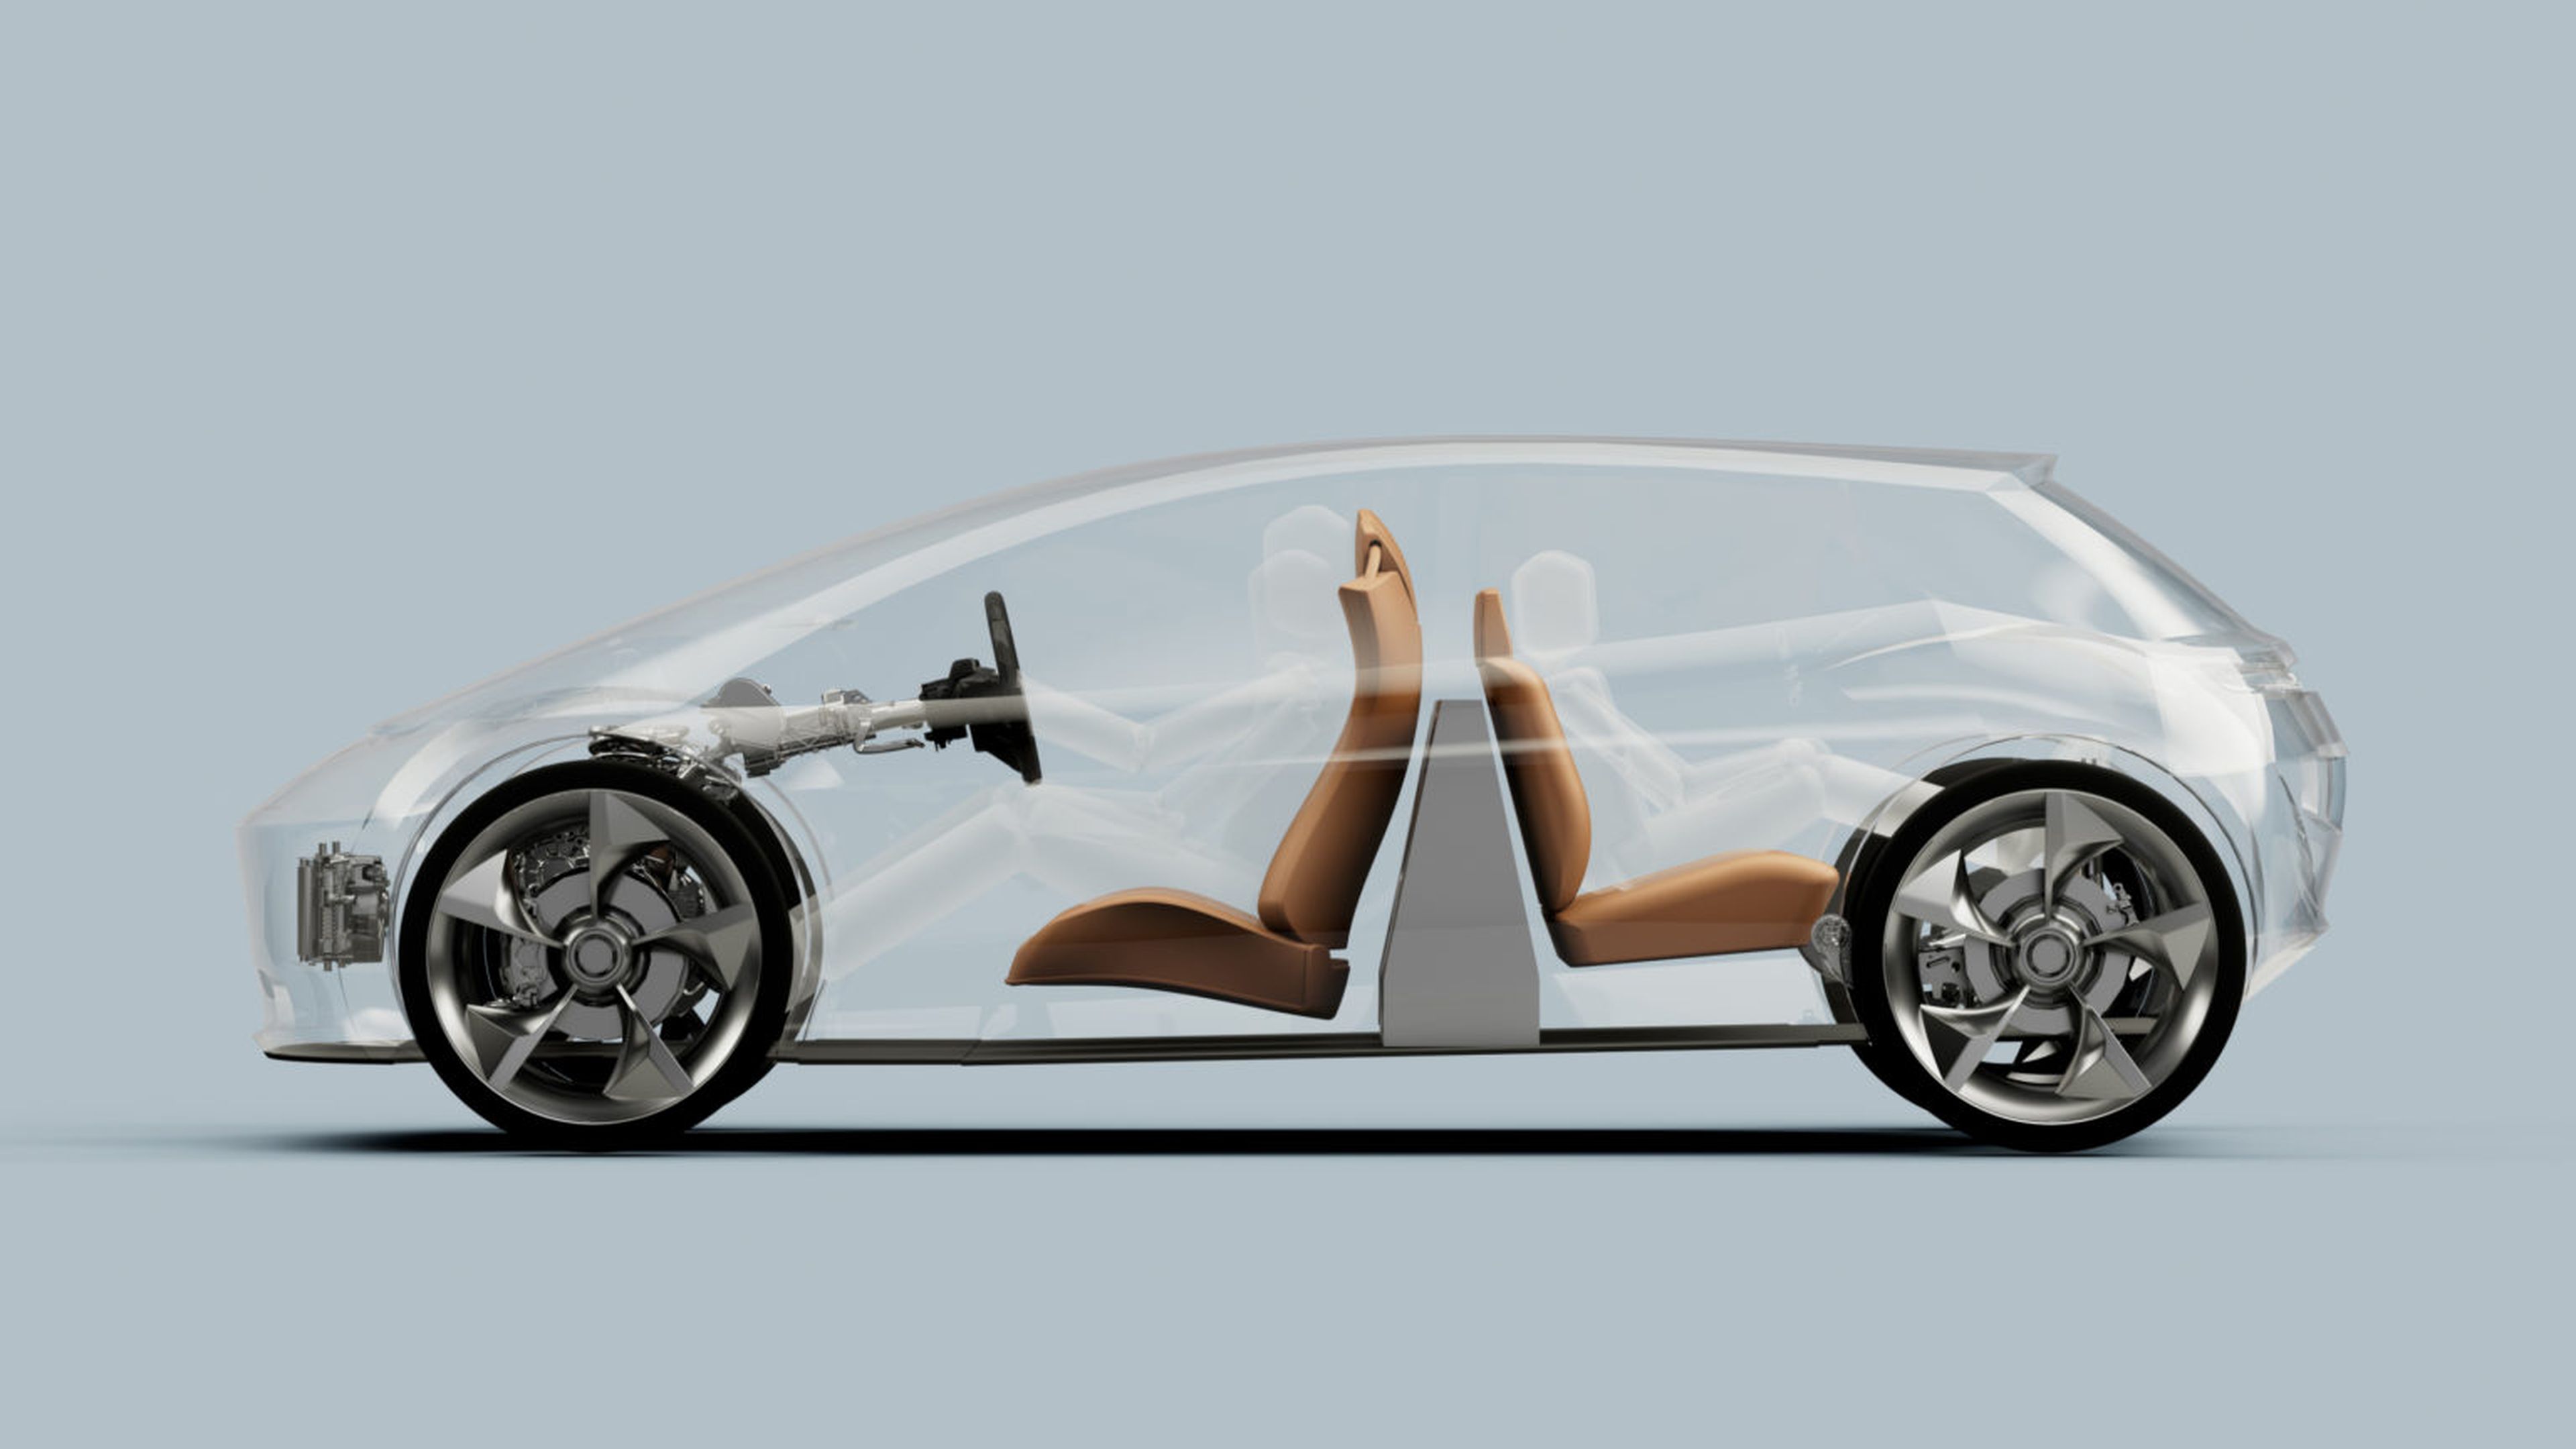 Diseño de batería vertical de coche eléctrico de la startup británica Page Roberts